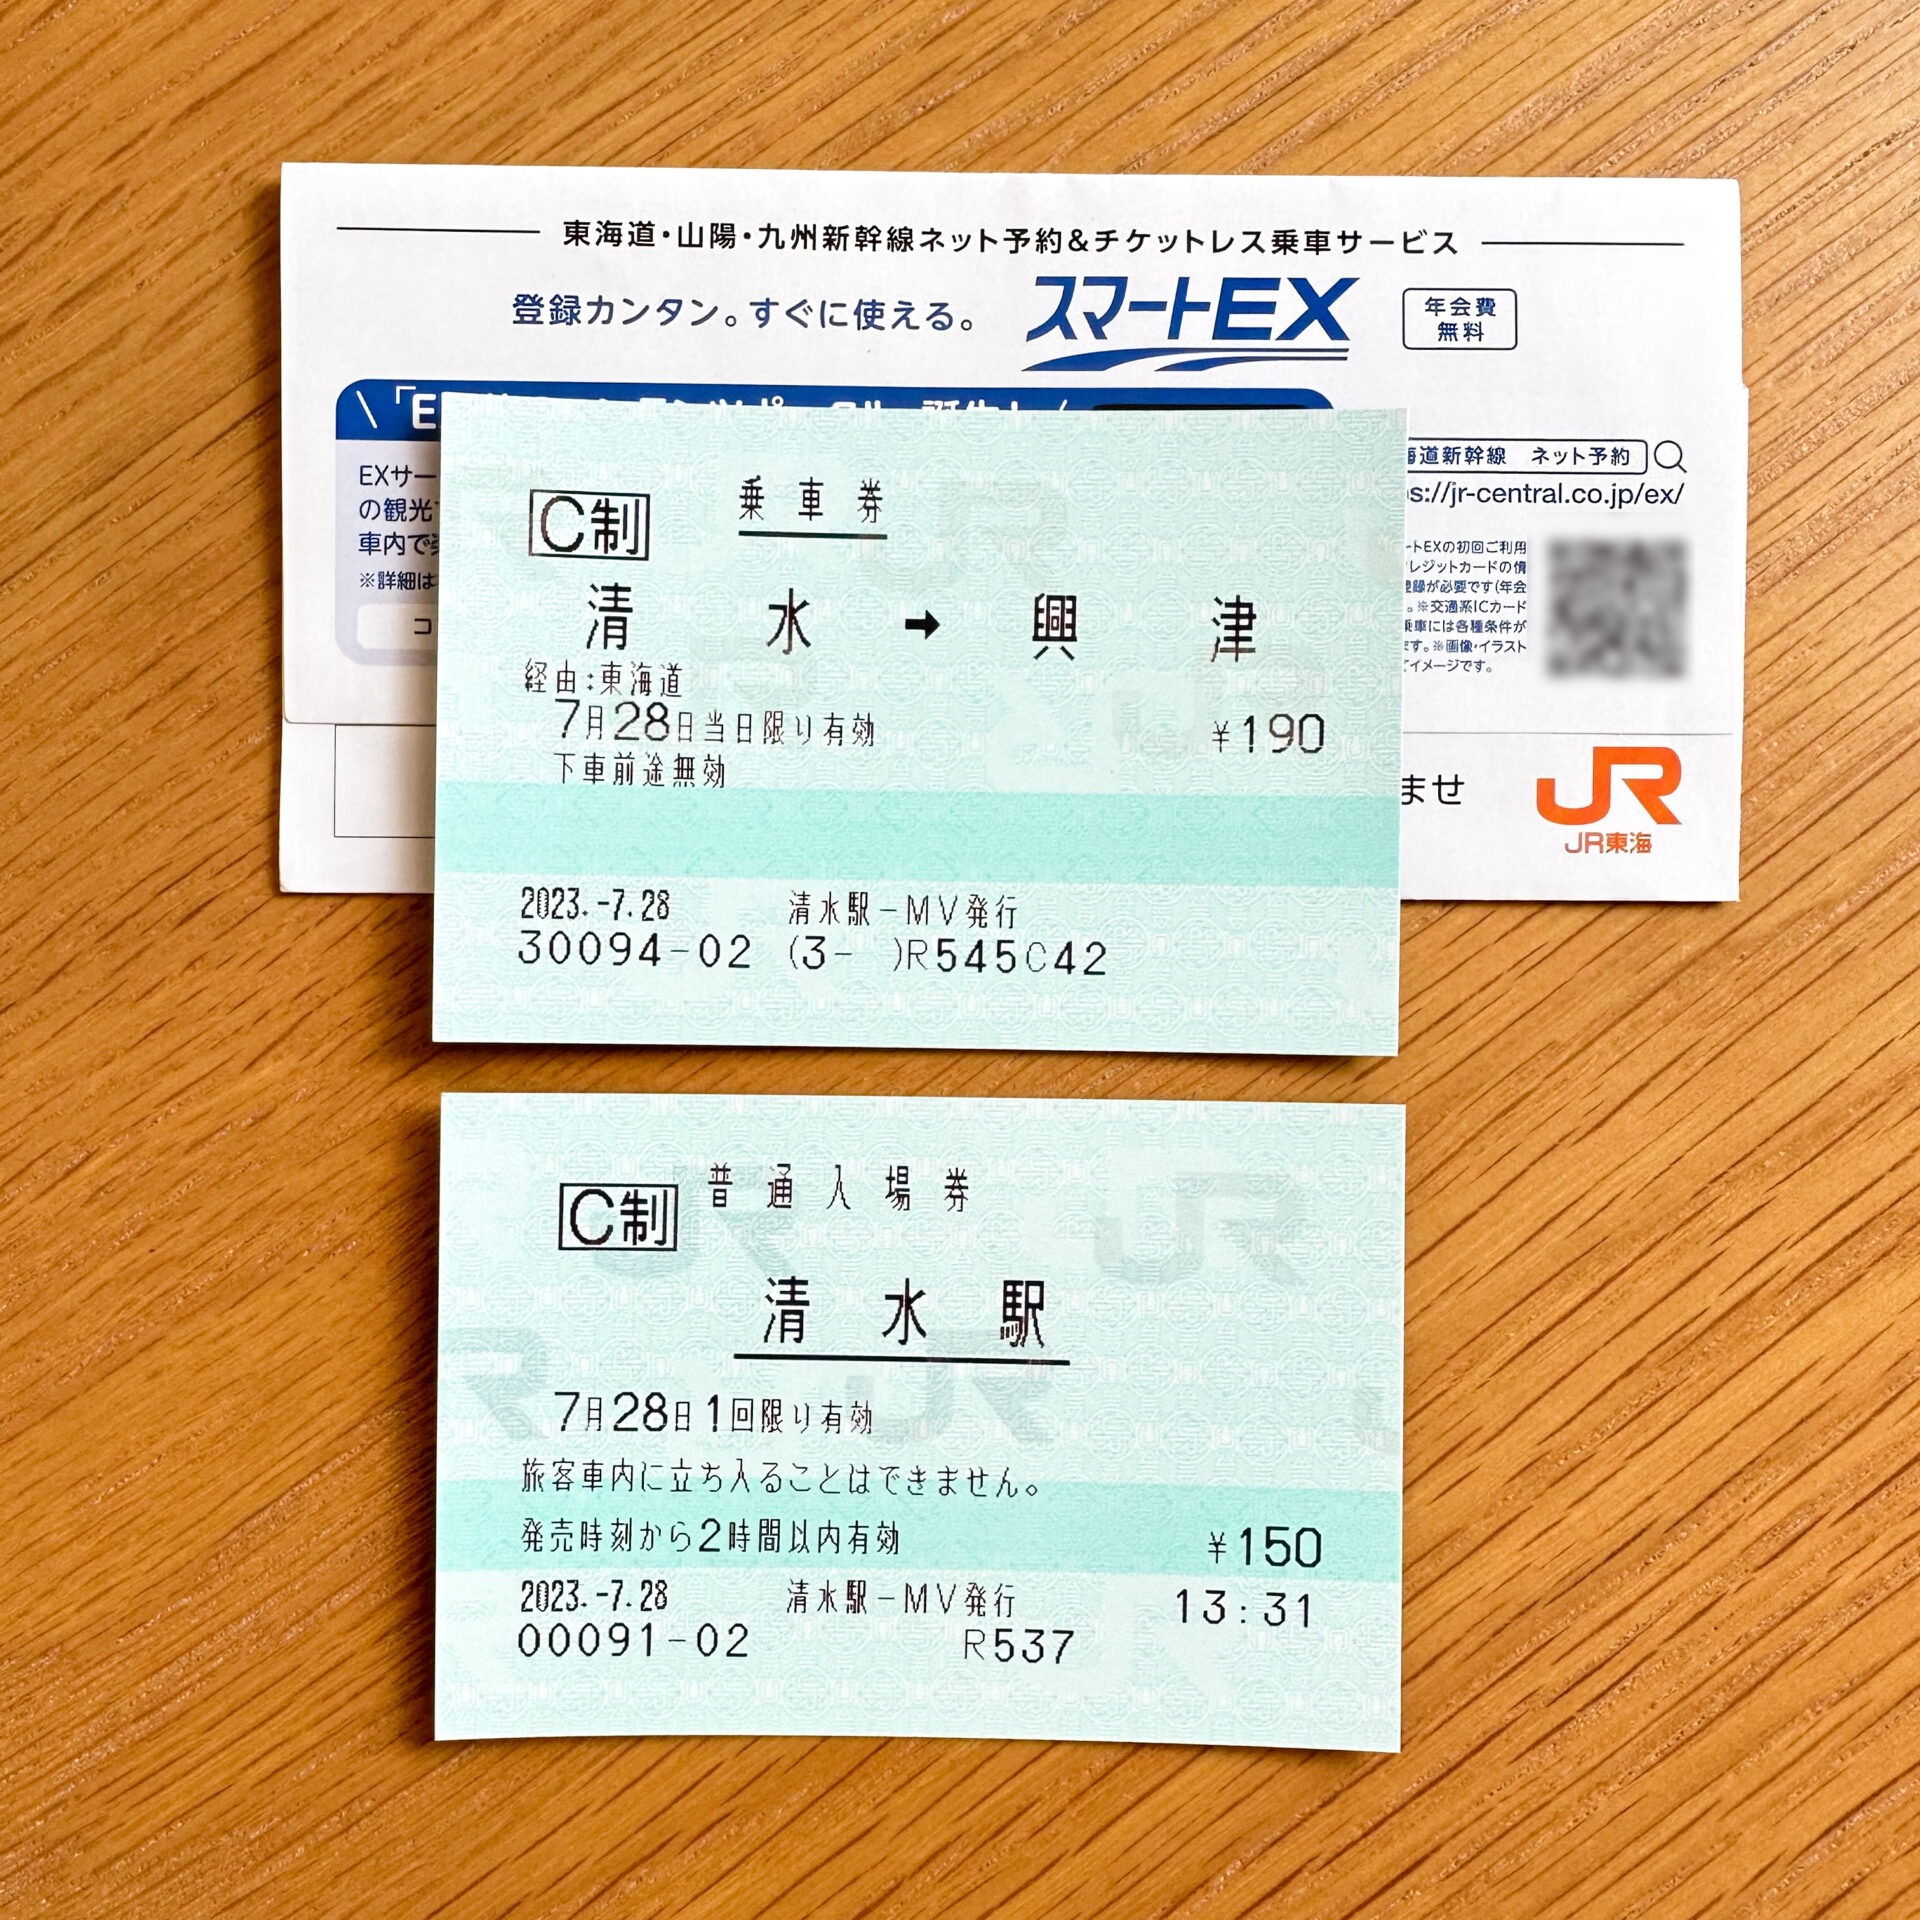 JR東海指定席券売機マルスモード乗車券サンプル